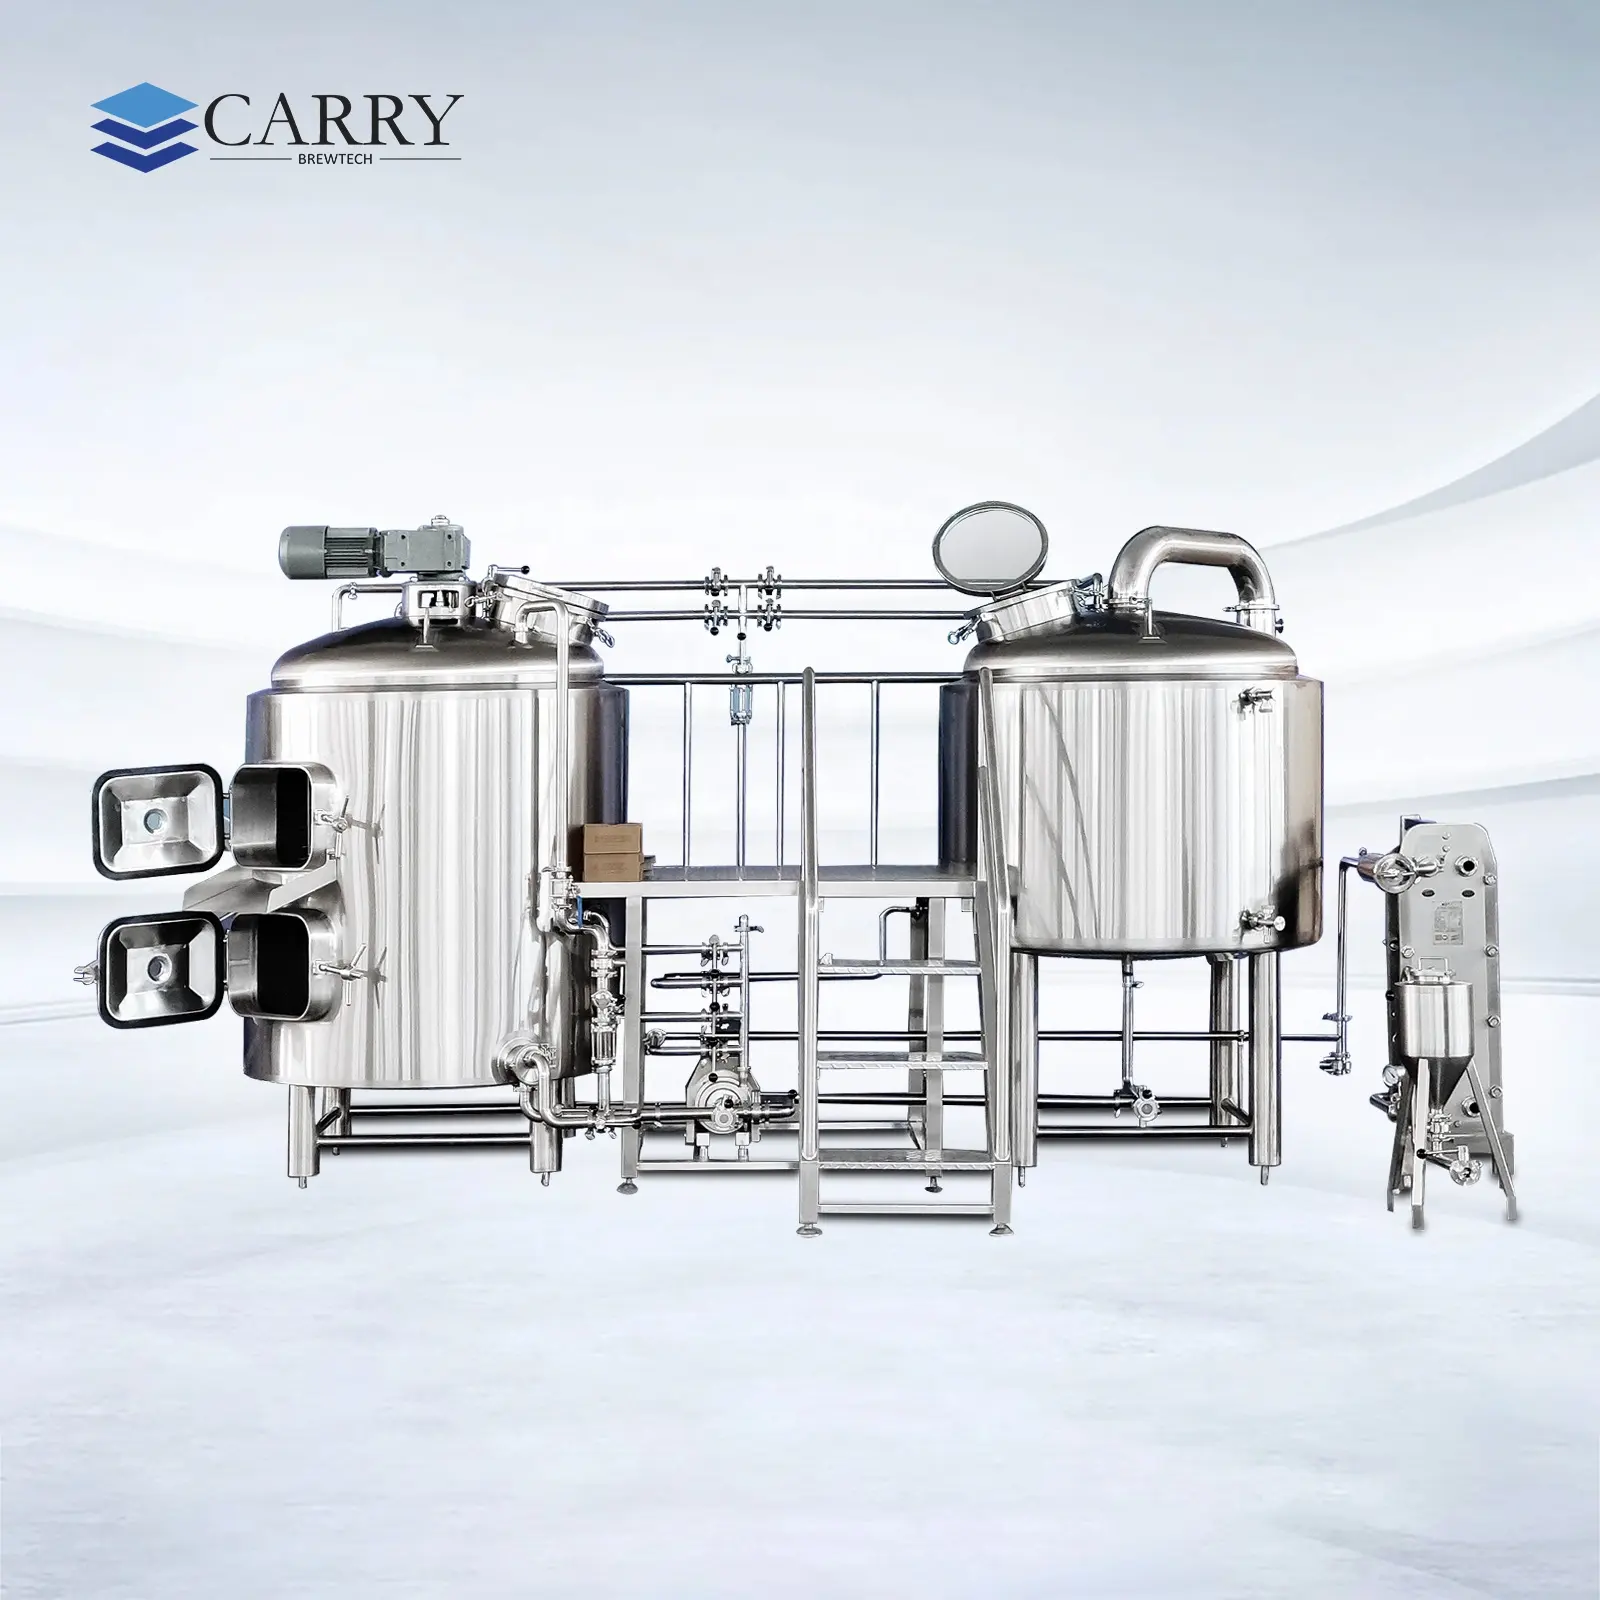 CARRY 600l schlüsselfertiges Projekt Brauhaus gewerbliche Brauereizubehör kombiniertes 2-Schiffs-Bierbrauhaus